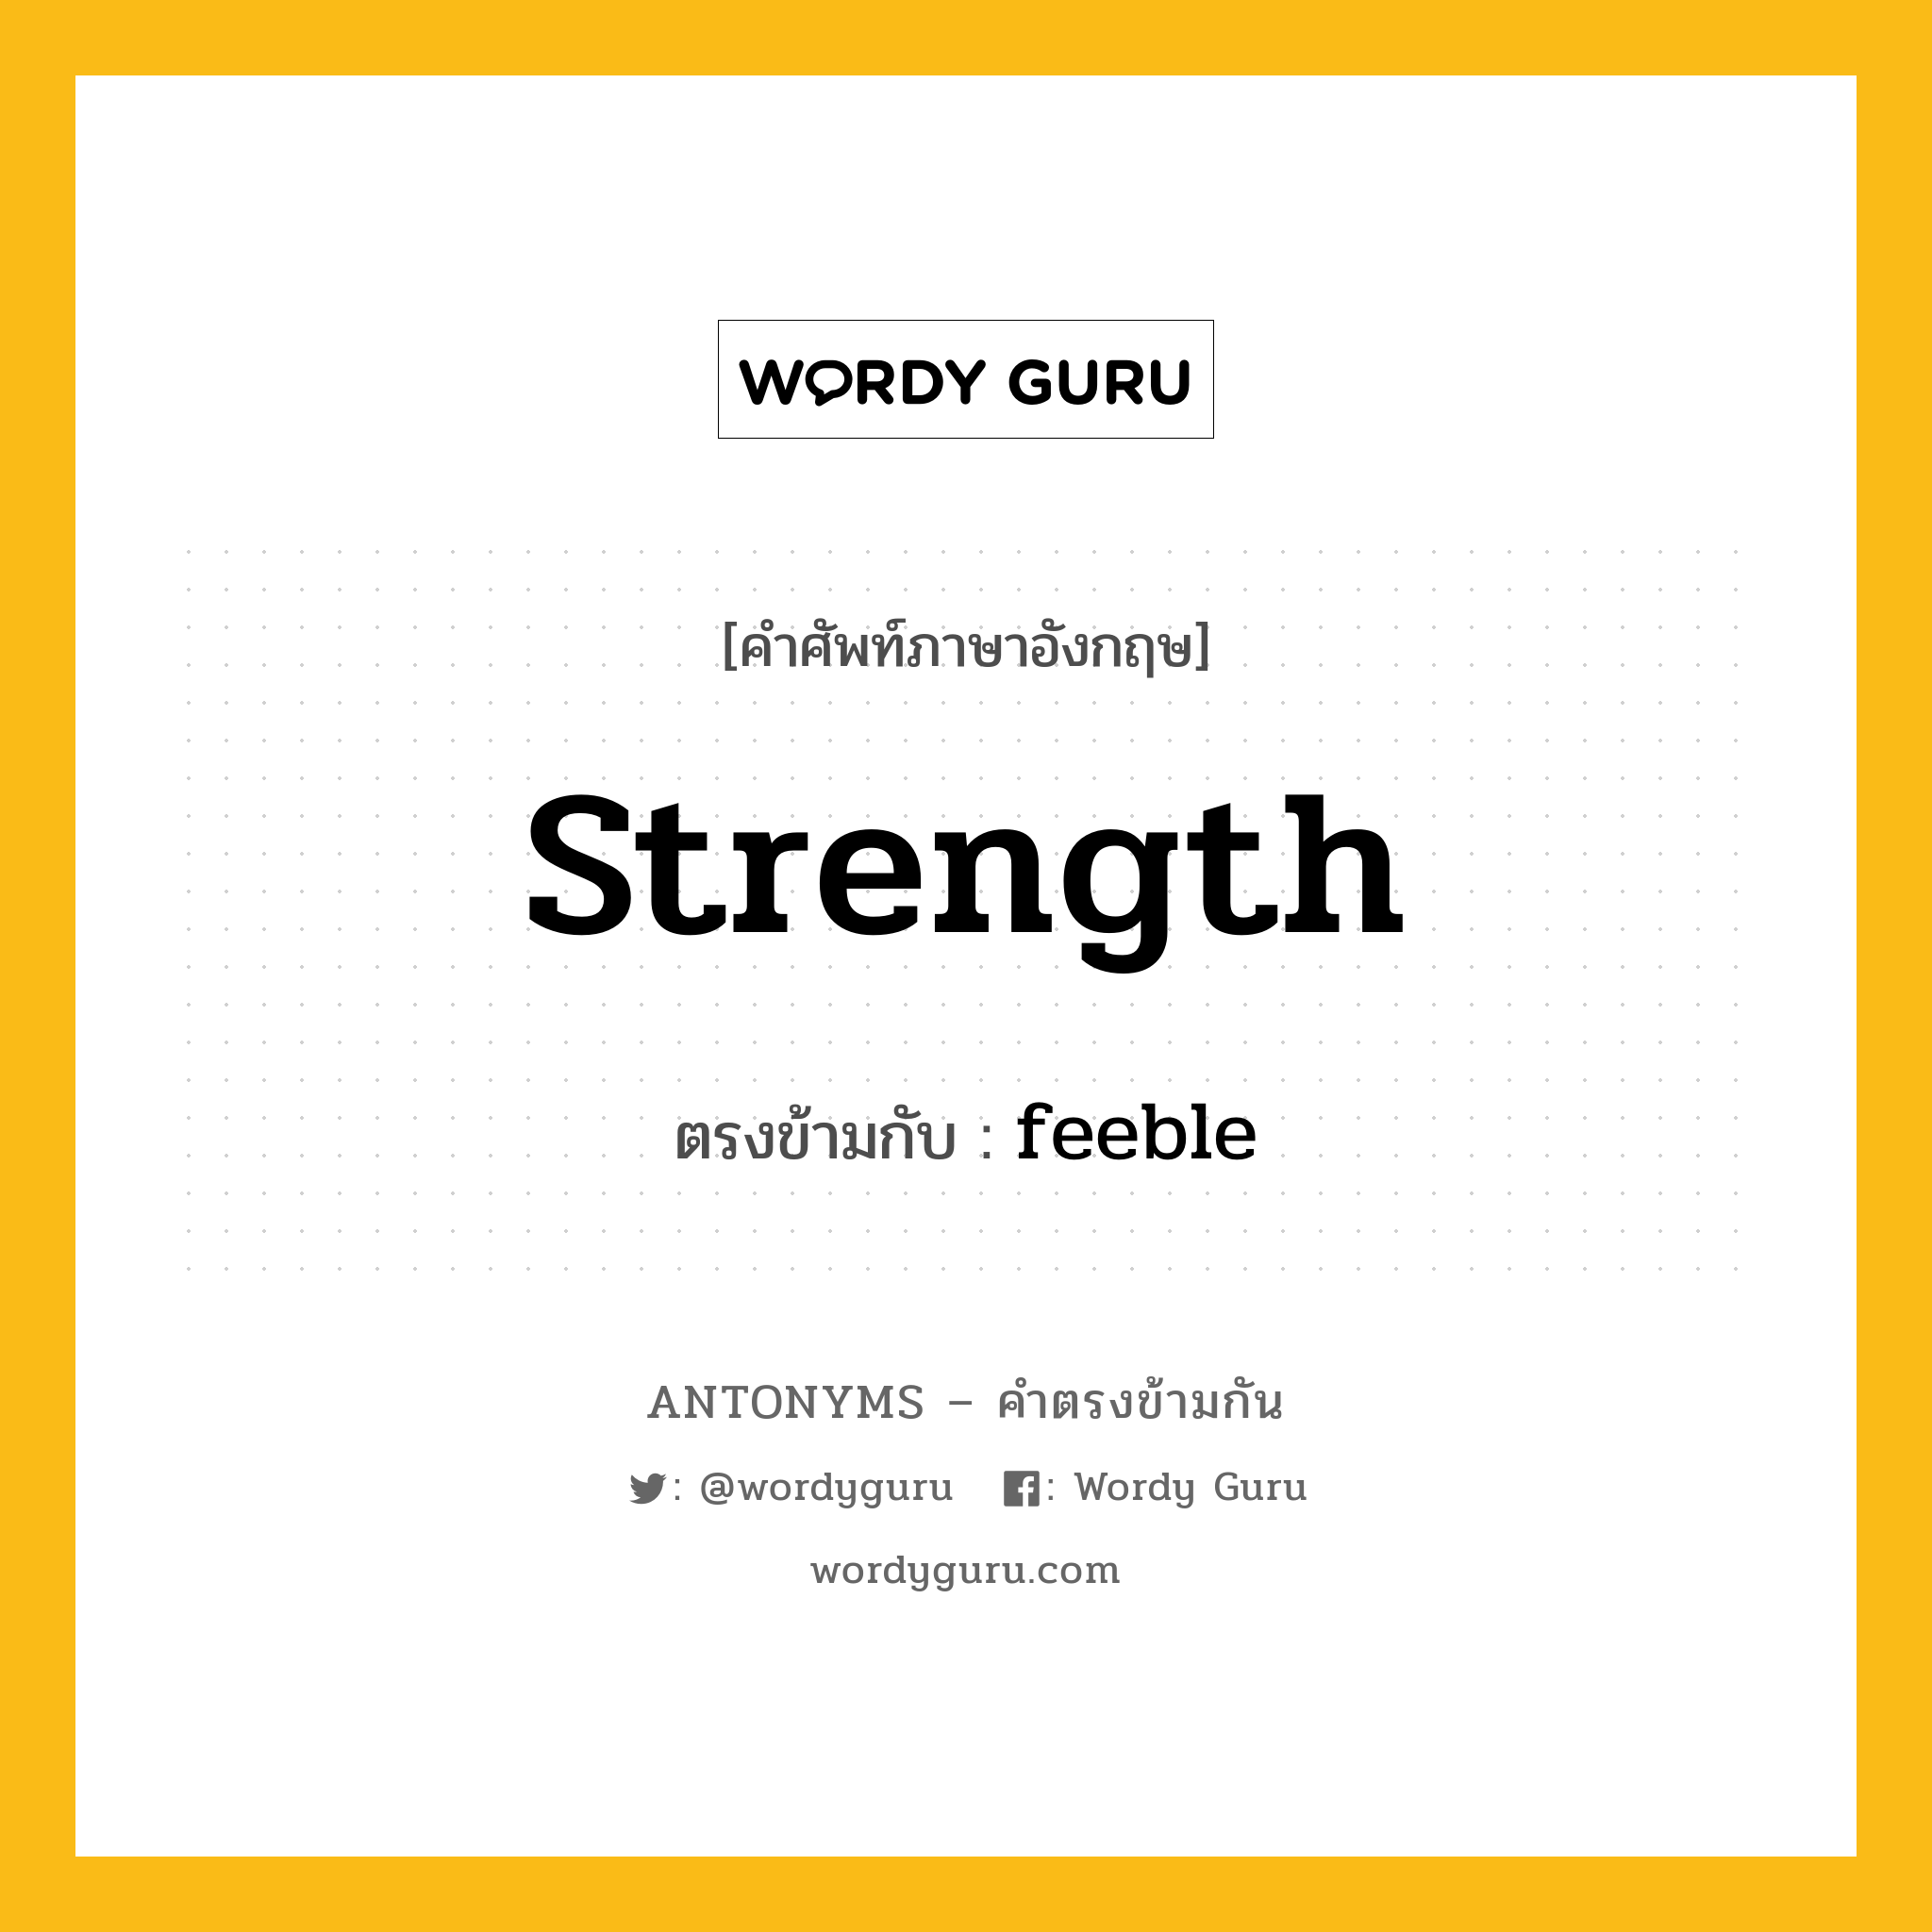 strength เป็นคำตรงข้ามกับคำไหนบ้าง?, คำศัพท์ภาษาอังกฤษ strength ตรงข้ามกับ feeble หมวด feeble